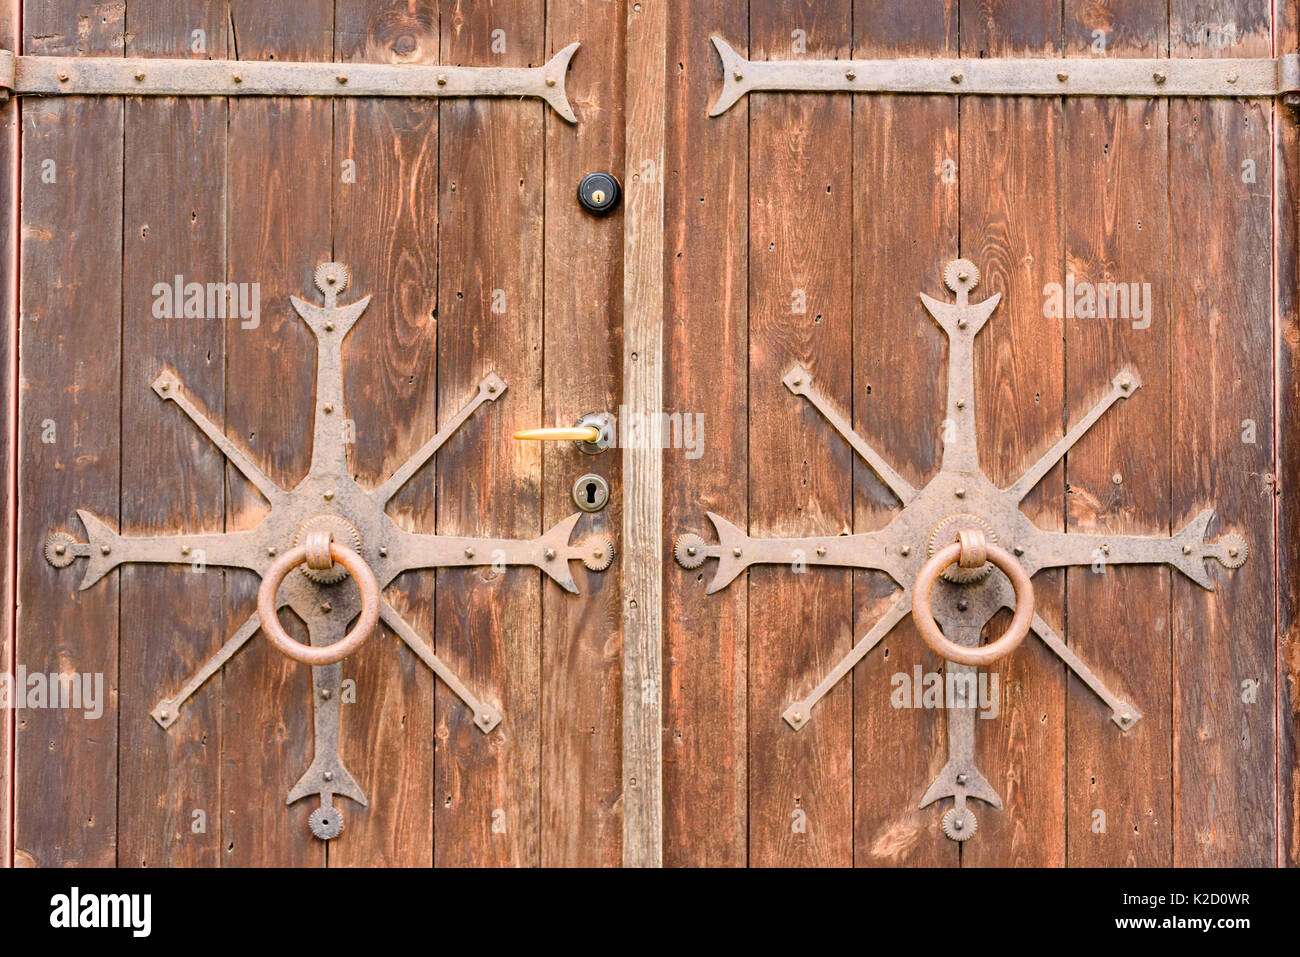 Vieilles portes en bois avec ornement du 19ème siècle. Forges forgé décorent les deux portes. Poignée de blocage et moderne sur une porte. Banque D'Images